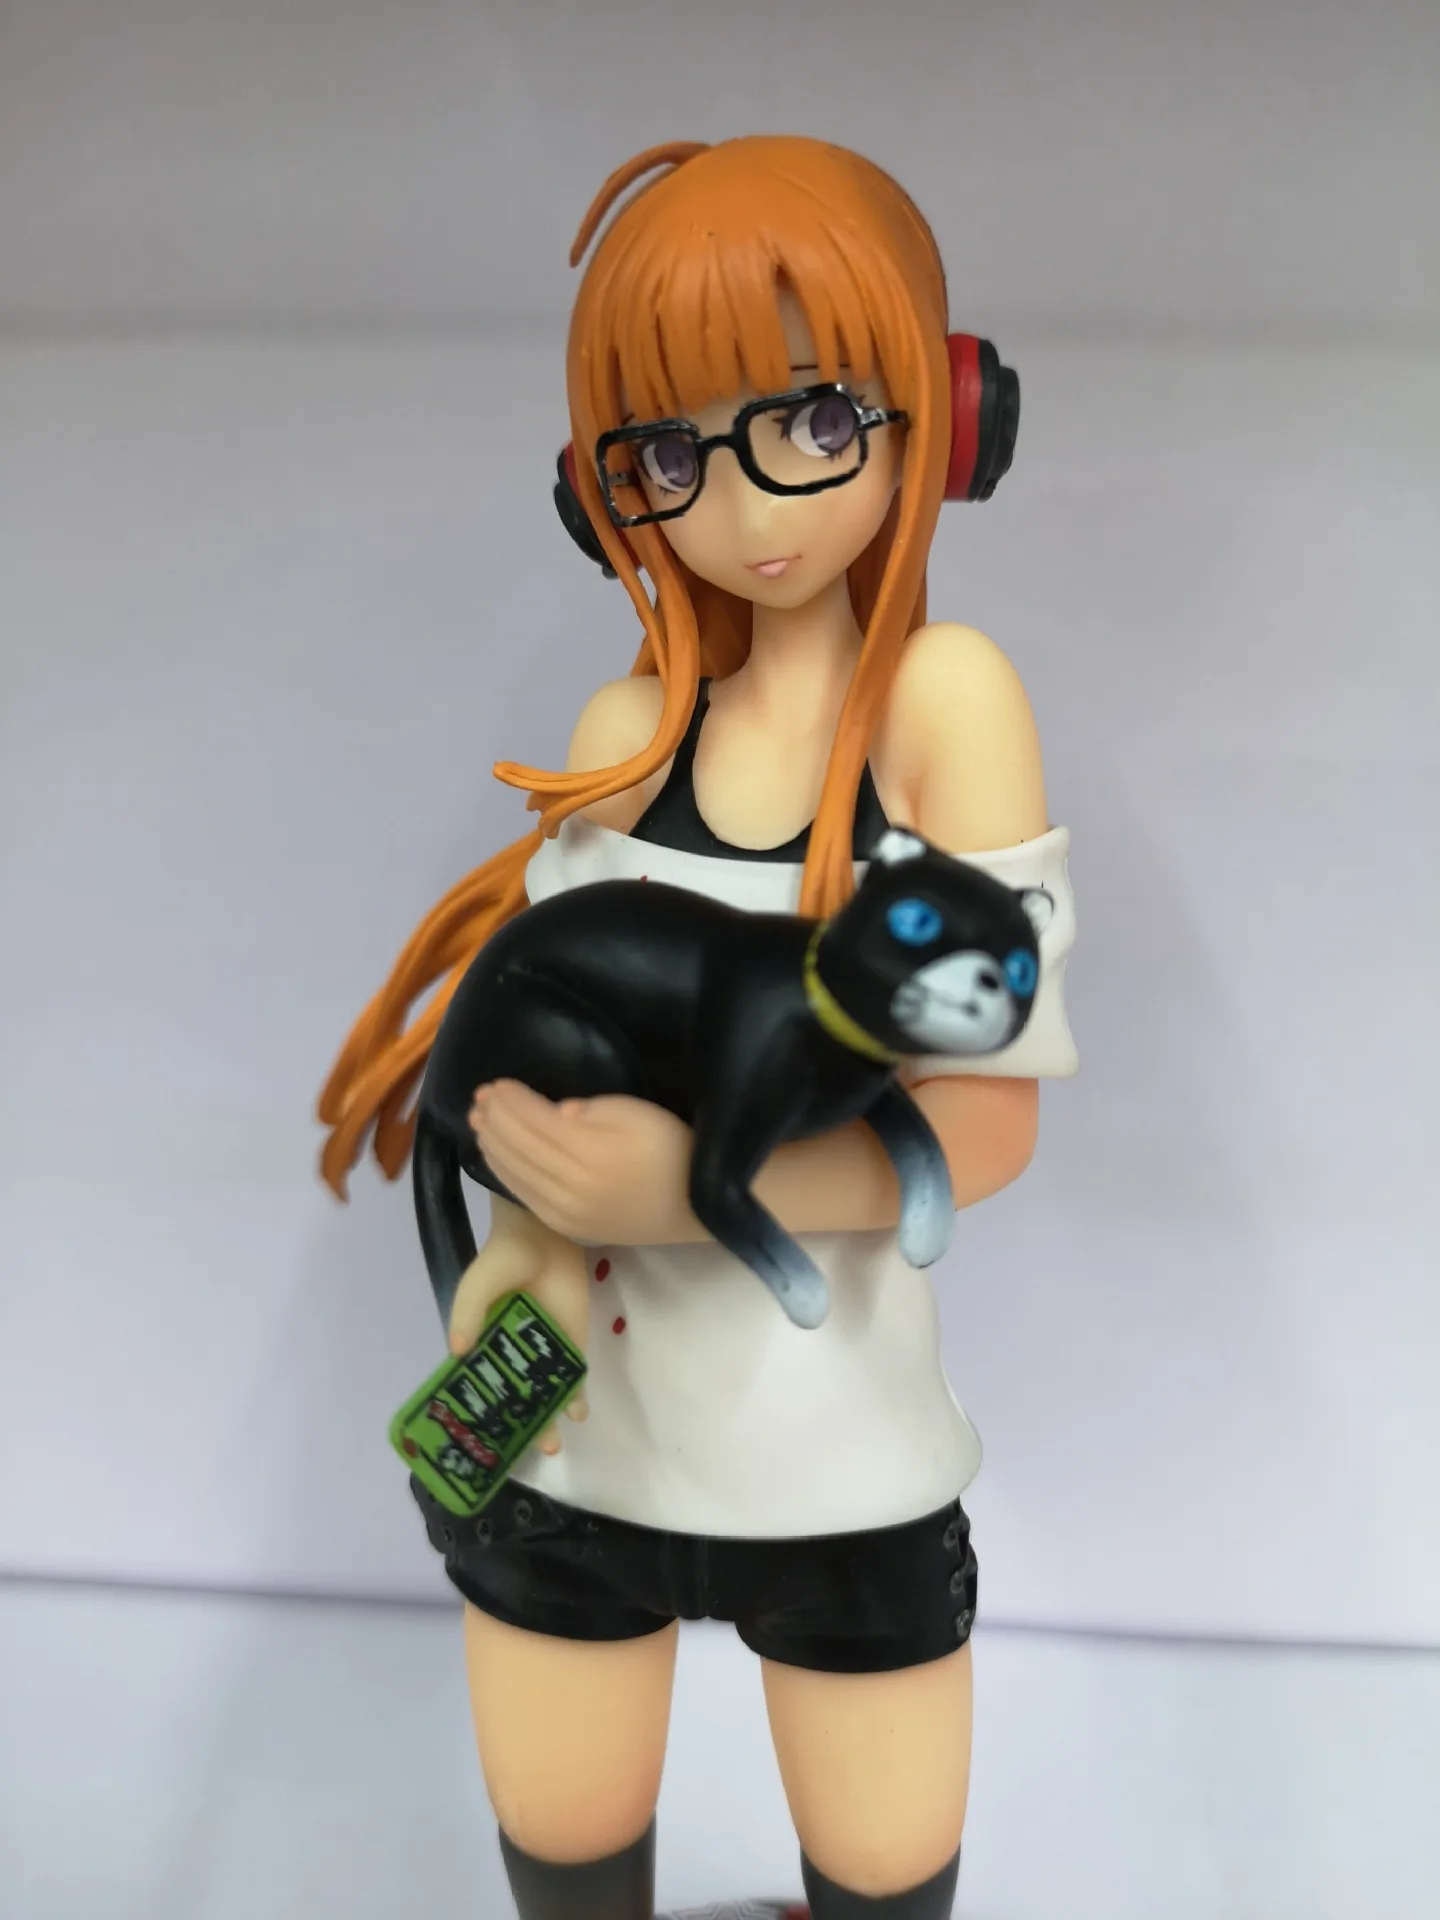 Persona 5 футаба Сакура фигурка ПВХ фигурка модель подарок игрушки